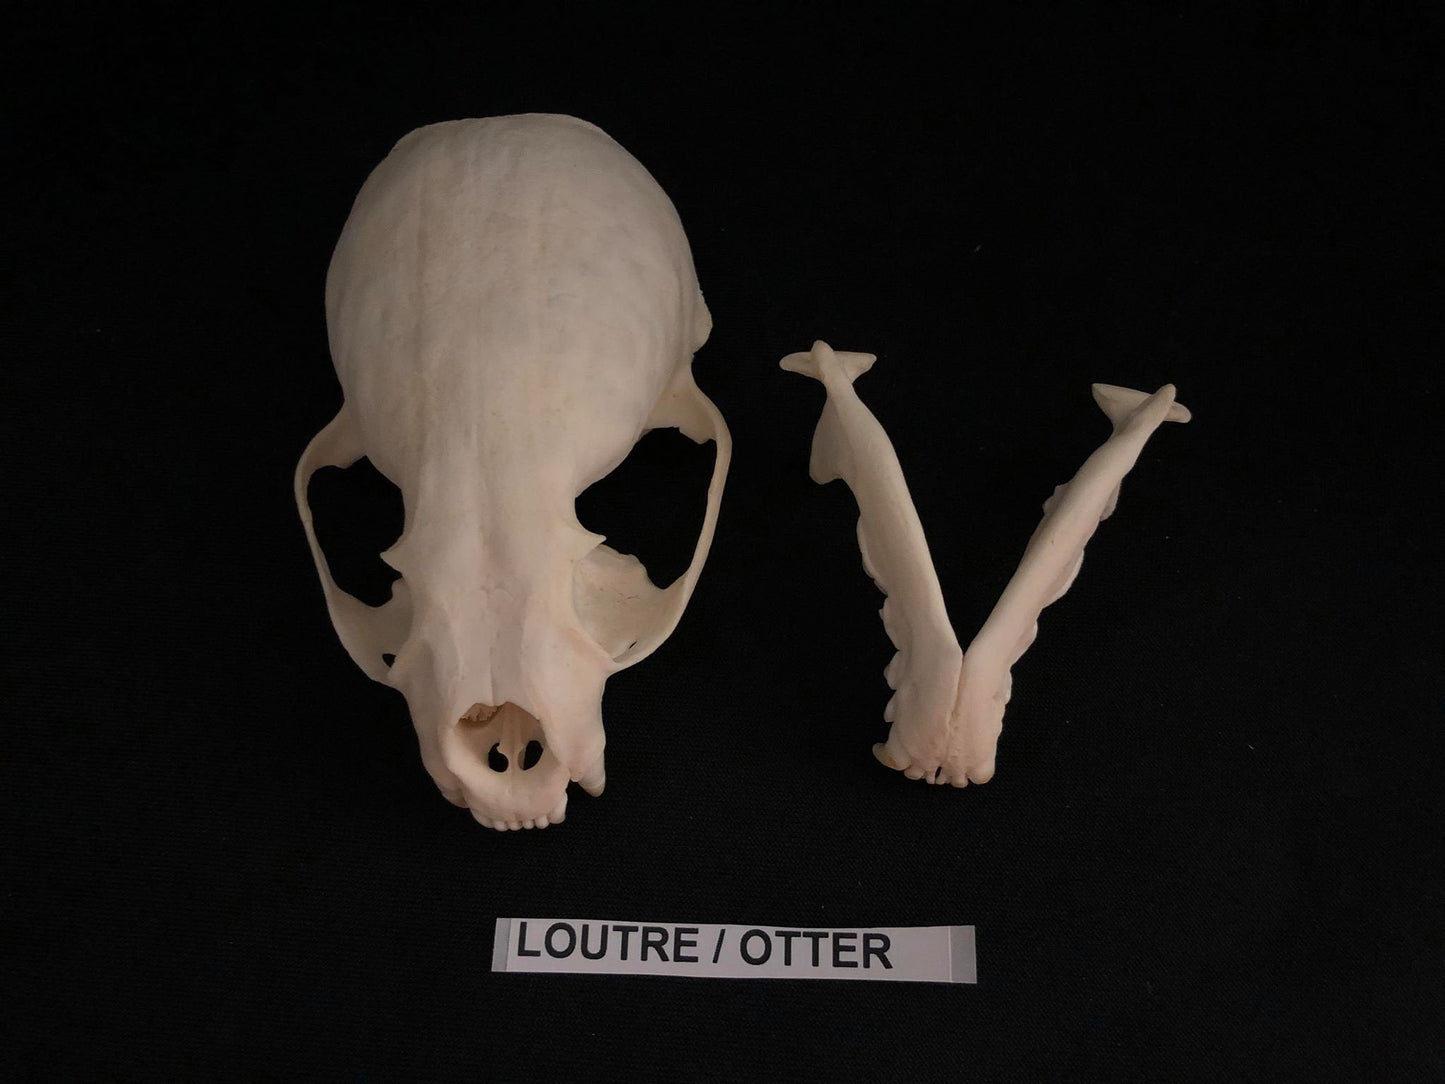 Otter Skull, Bone  /  Authentique Crâne de Loutre